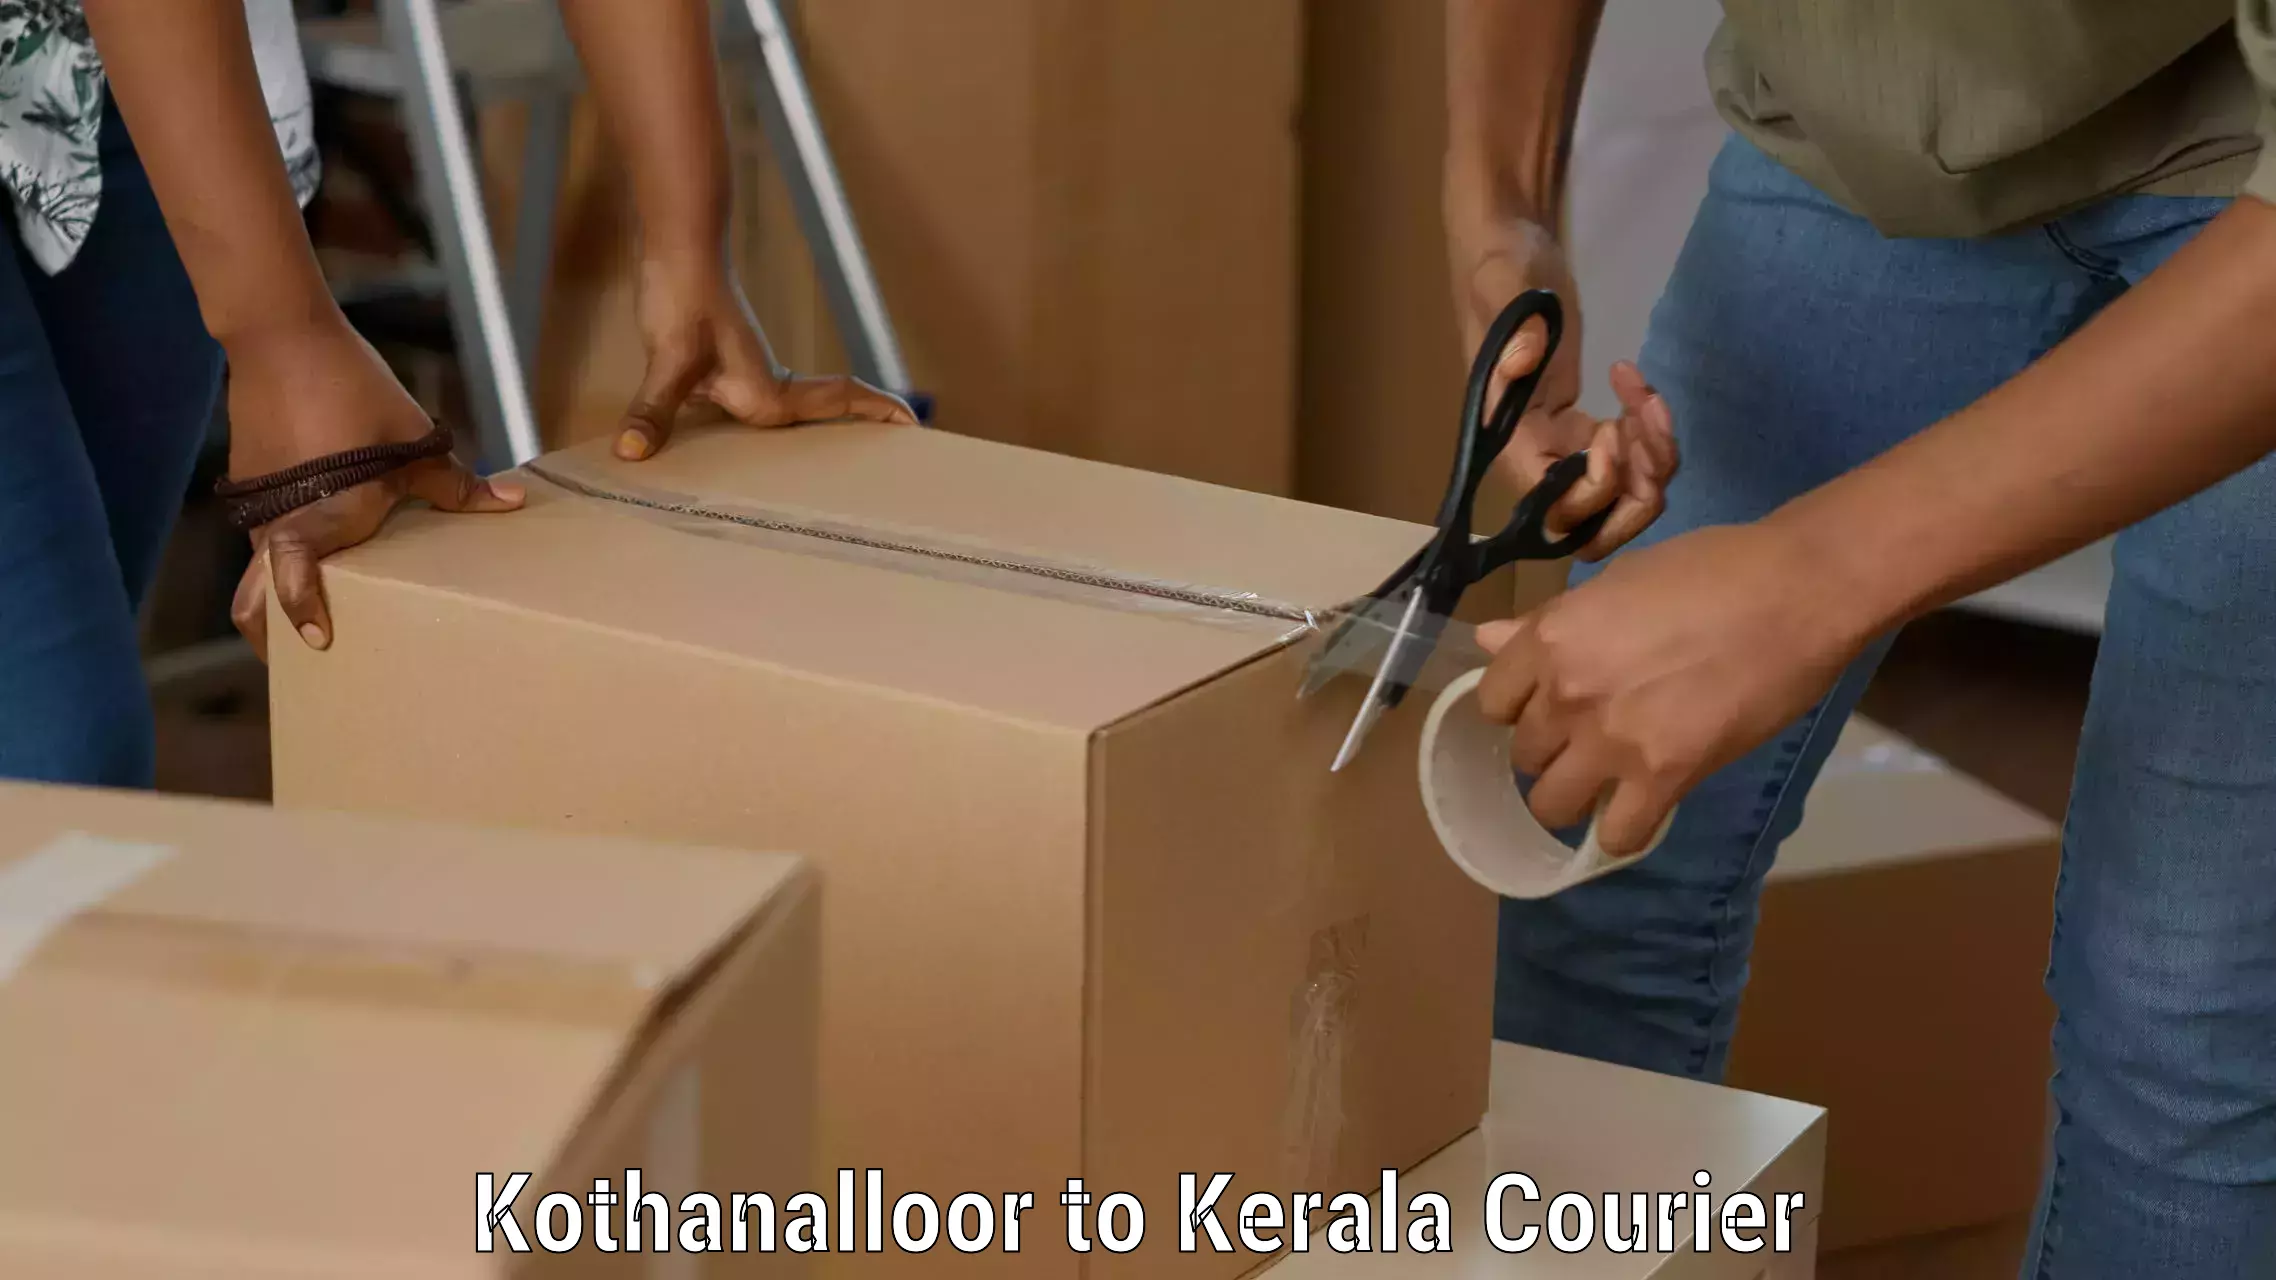 Lightweight parcel options Kothanalloor to Kondotty